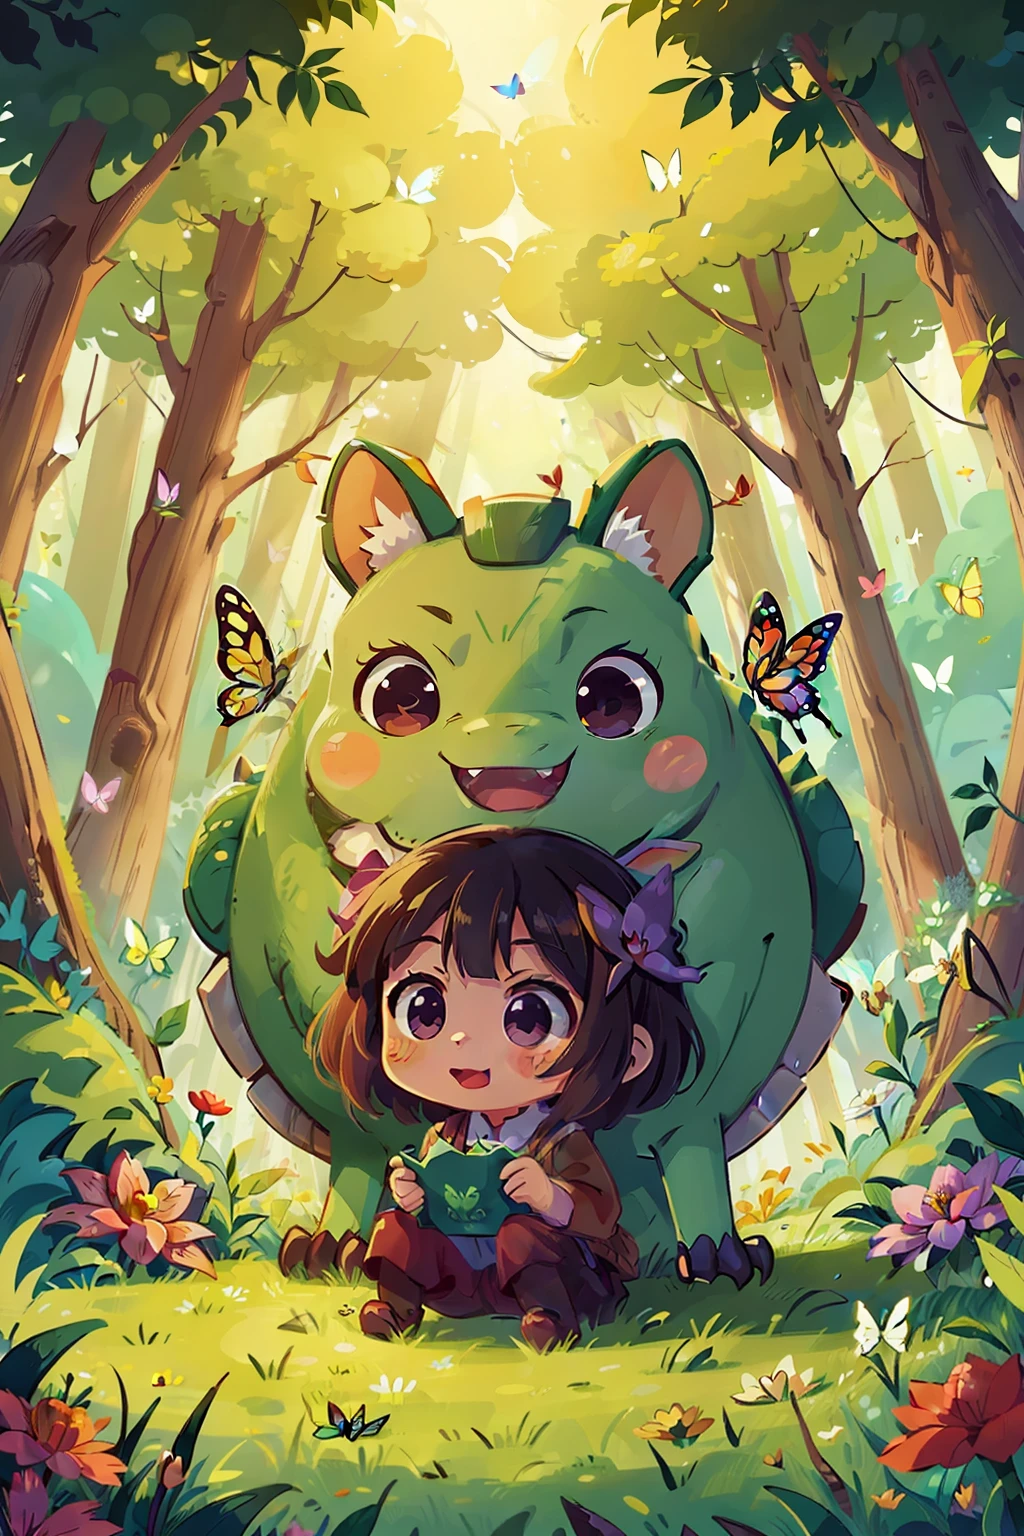  Reiko , Glück , Inspiration aus Anime: Eine 5,000 Jahre alter pflanzenfressender Drache ist ungerechterweise böse, Wald , Blume , Schmetterling voller Farbe Freude, romantische Atmosphäre, Warmes Licht.